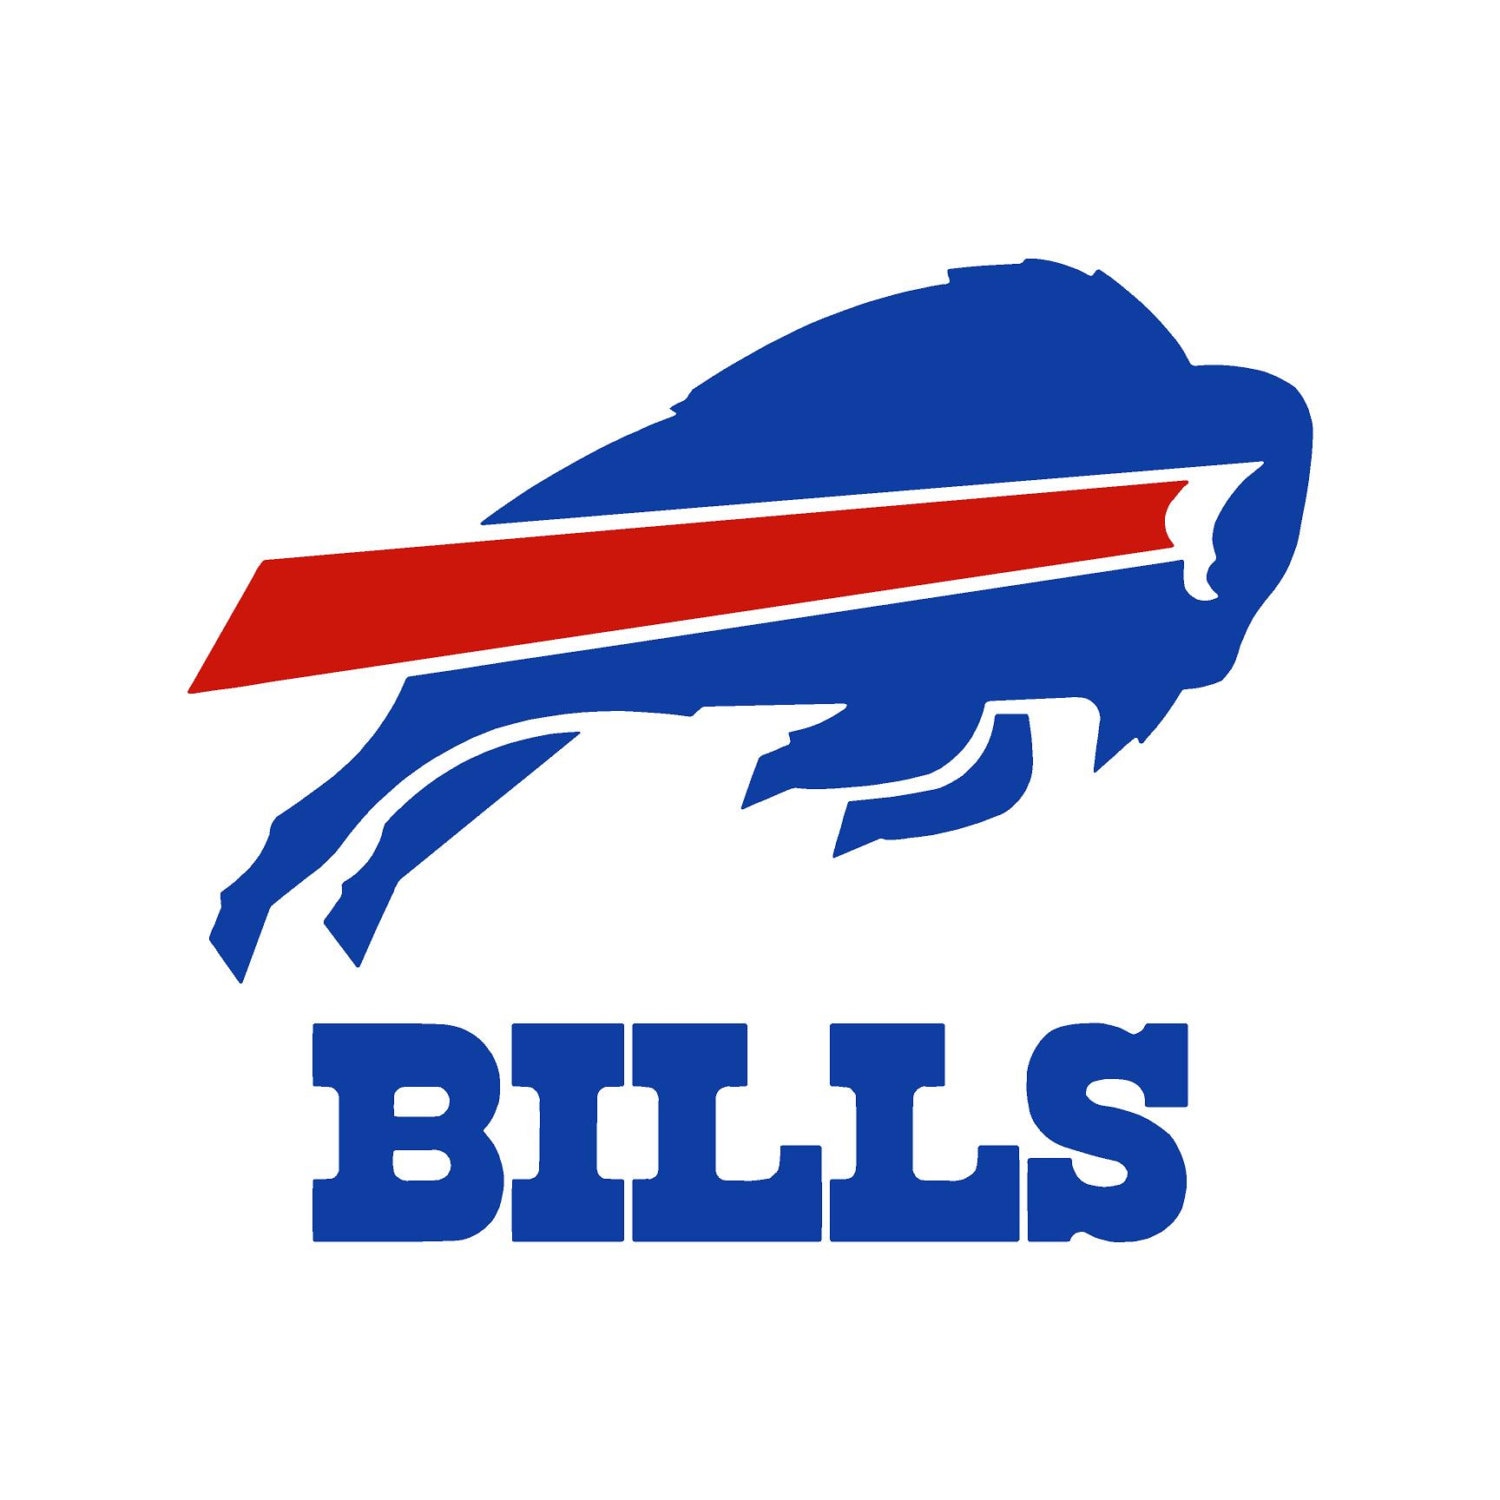 printable-buffalo-bills-logo-customize-and-print